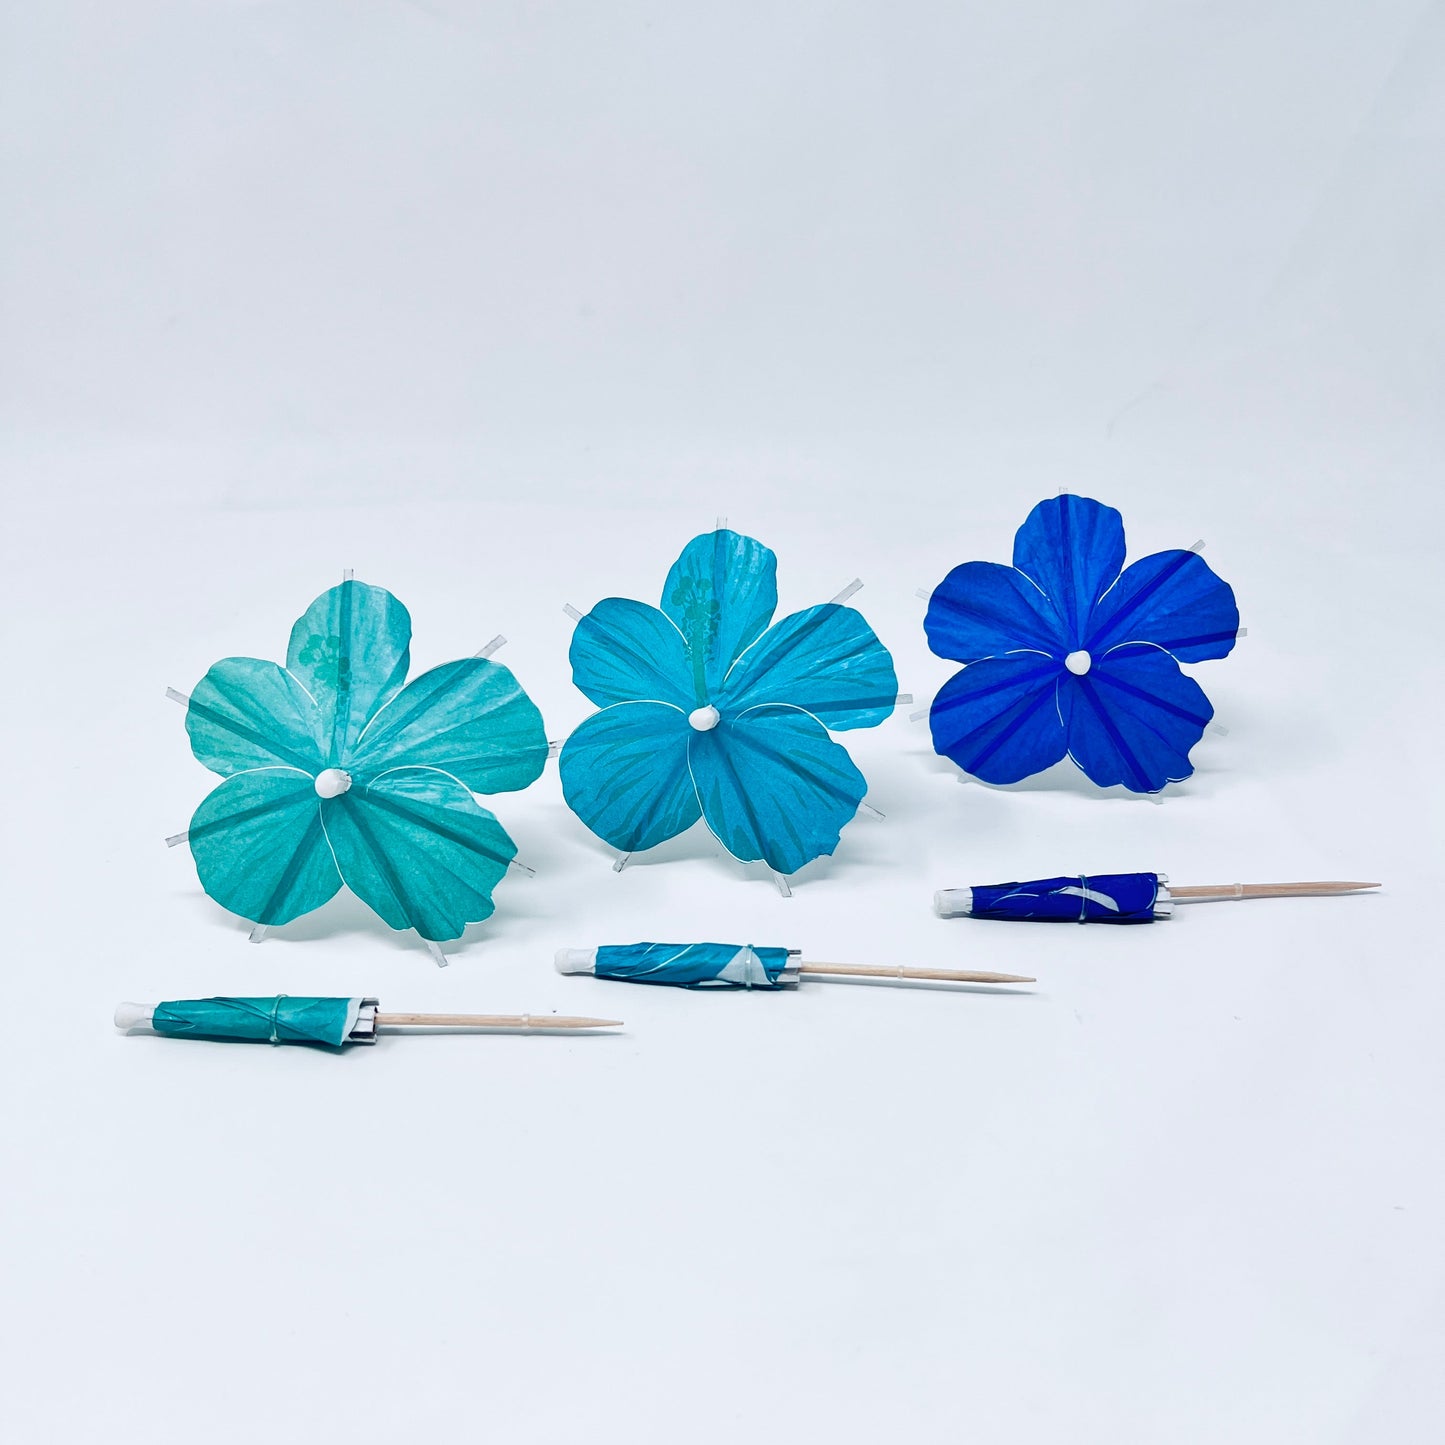 Caribbean Blue Turquoise Hibiscus flower Cocktail Umbrella